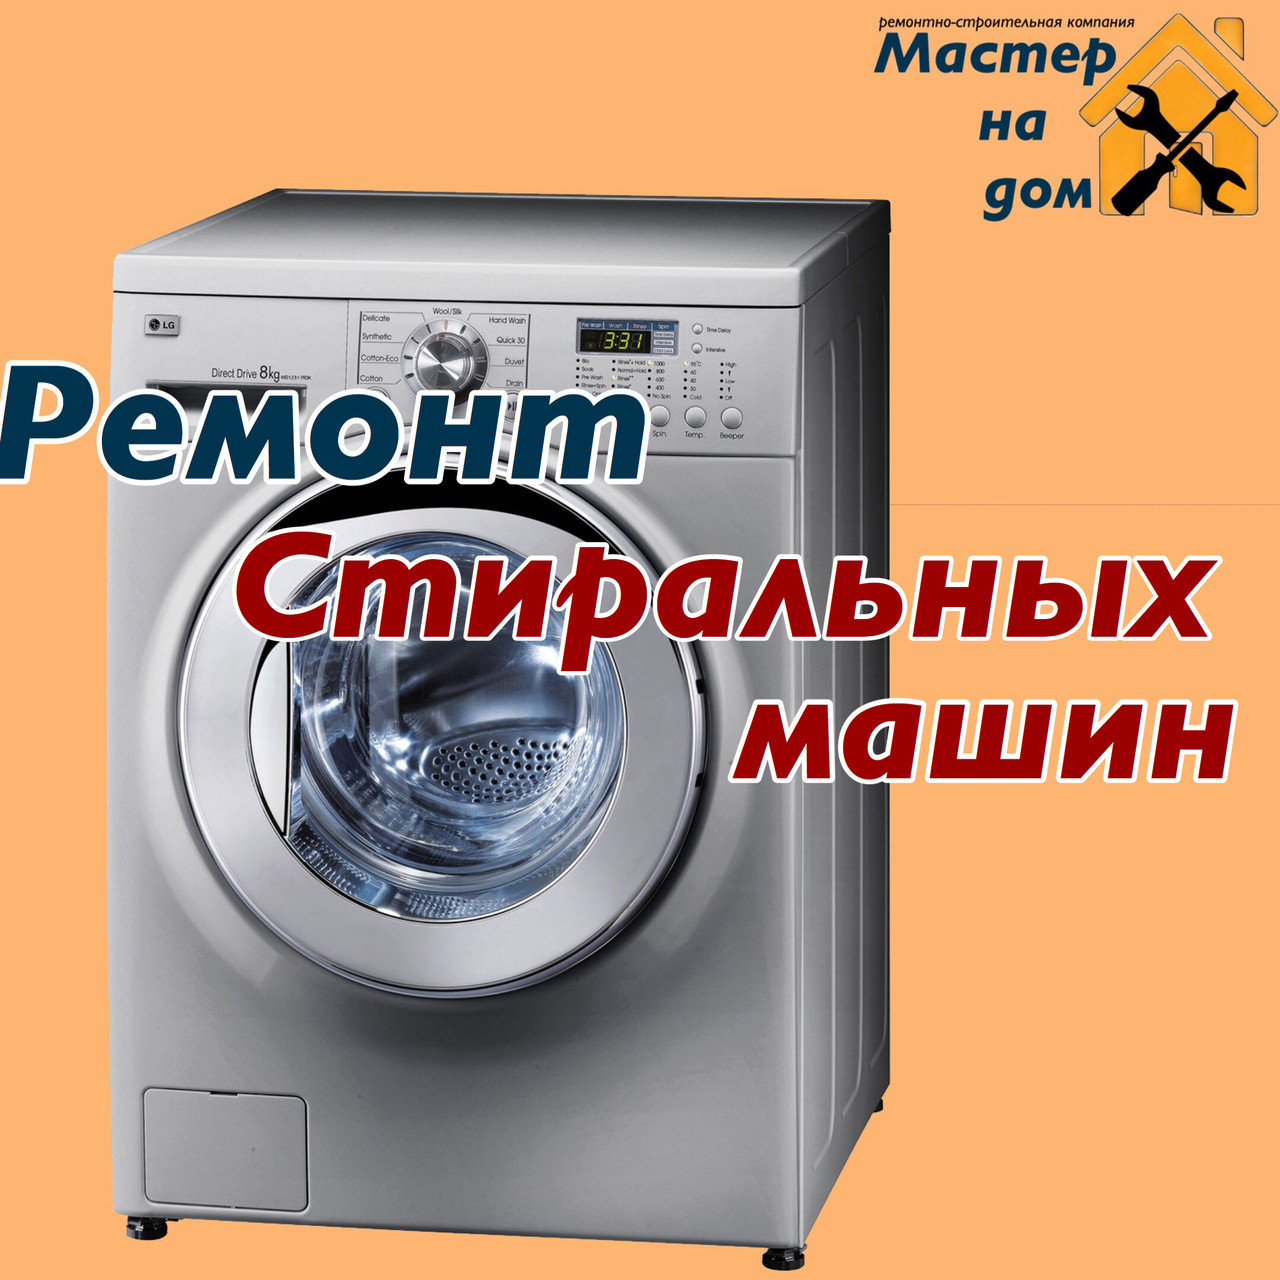 Ремонт стиральных машин BOSH в Чернигове